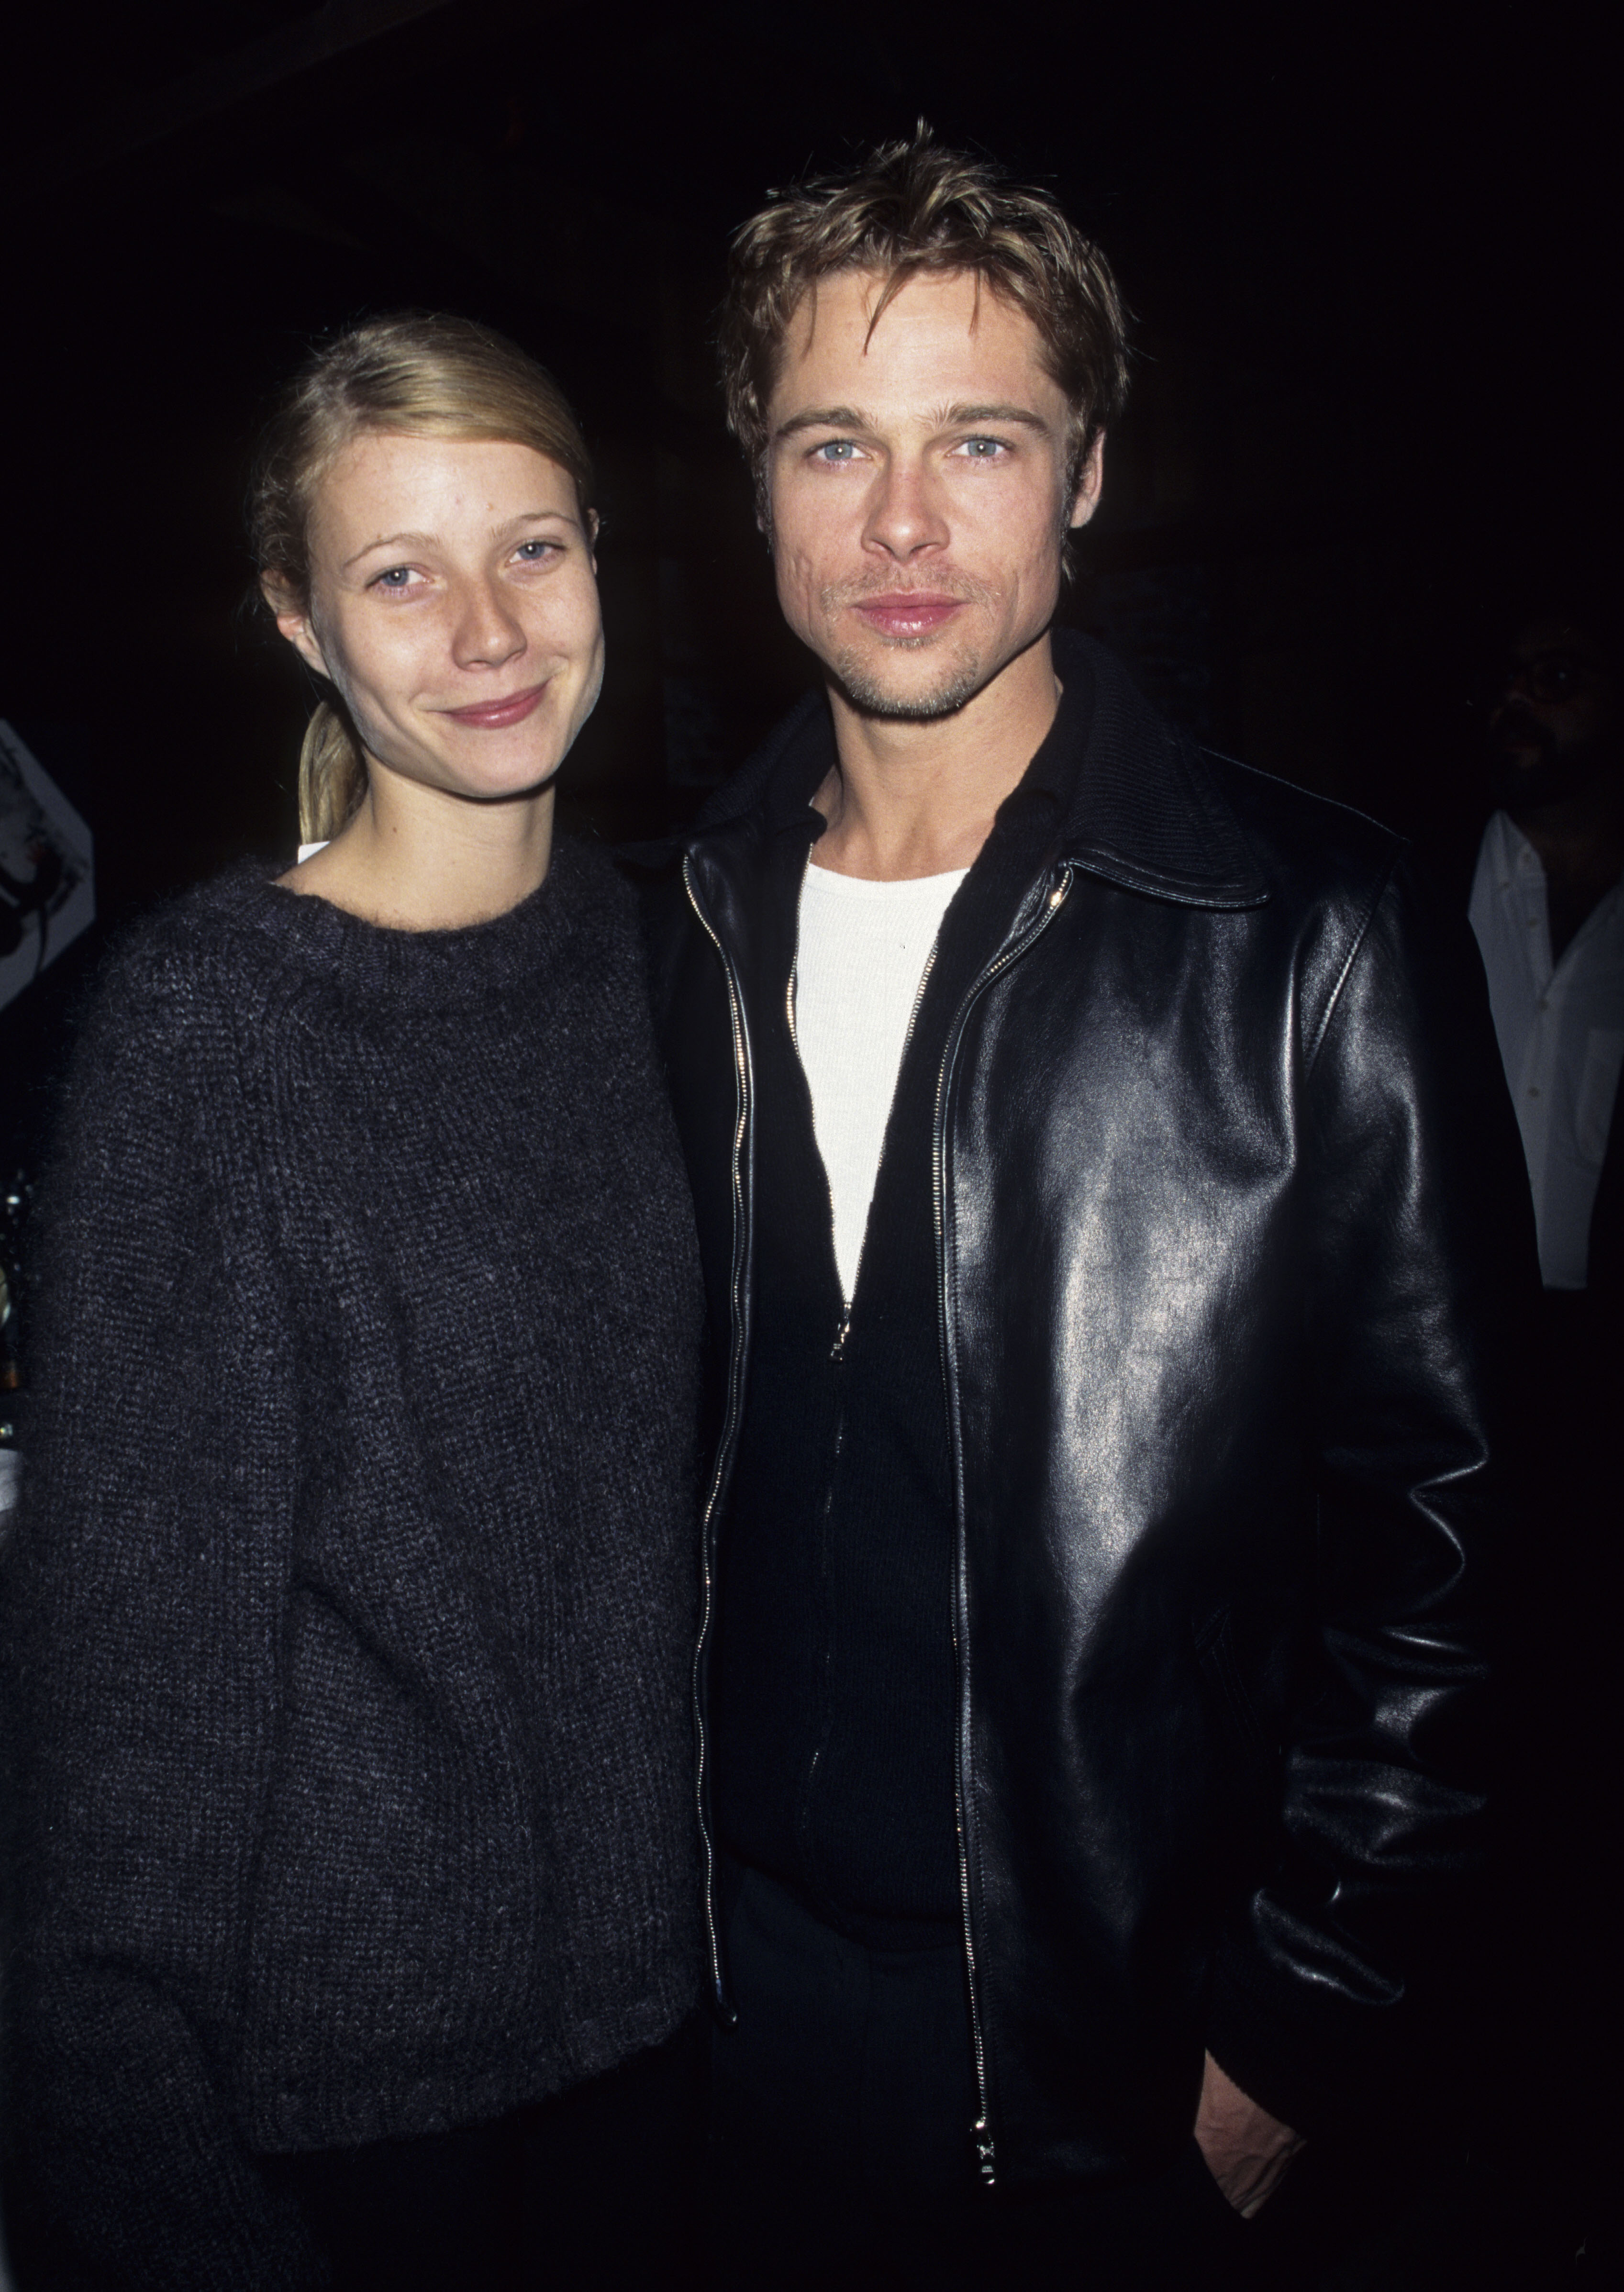 Gwyneth Paltrow et Brad Pitt à la soirée d'après spectacle de David Bowie sur une photo non datée | Source : Getty Images